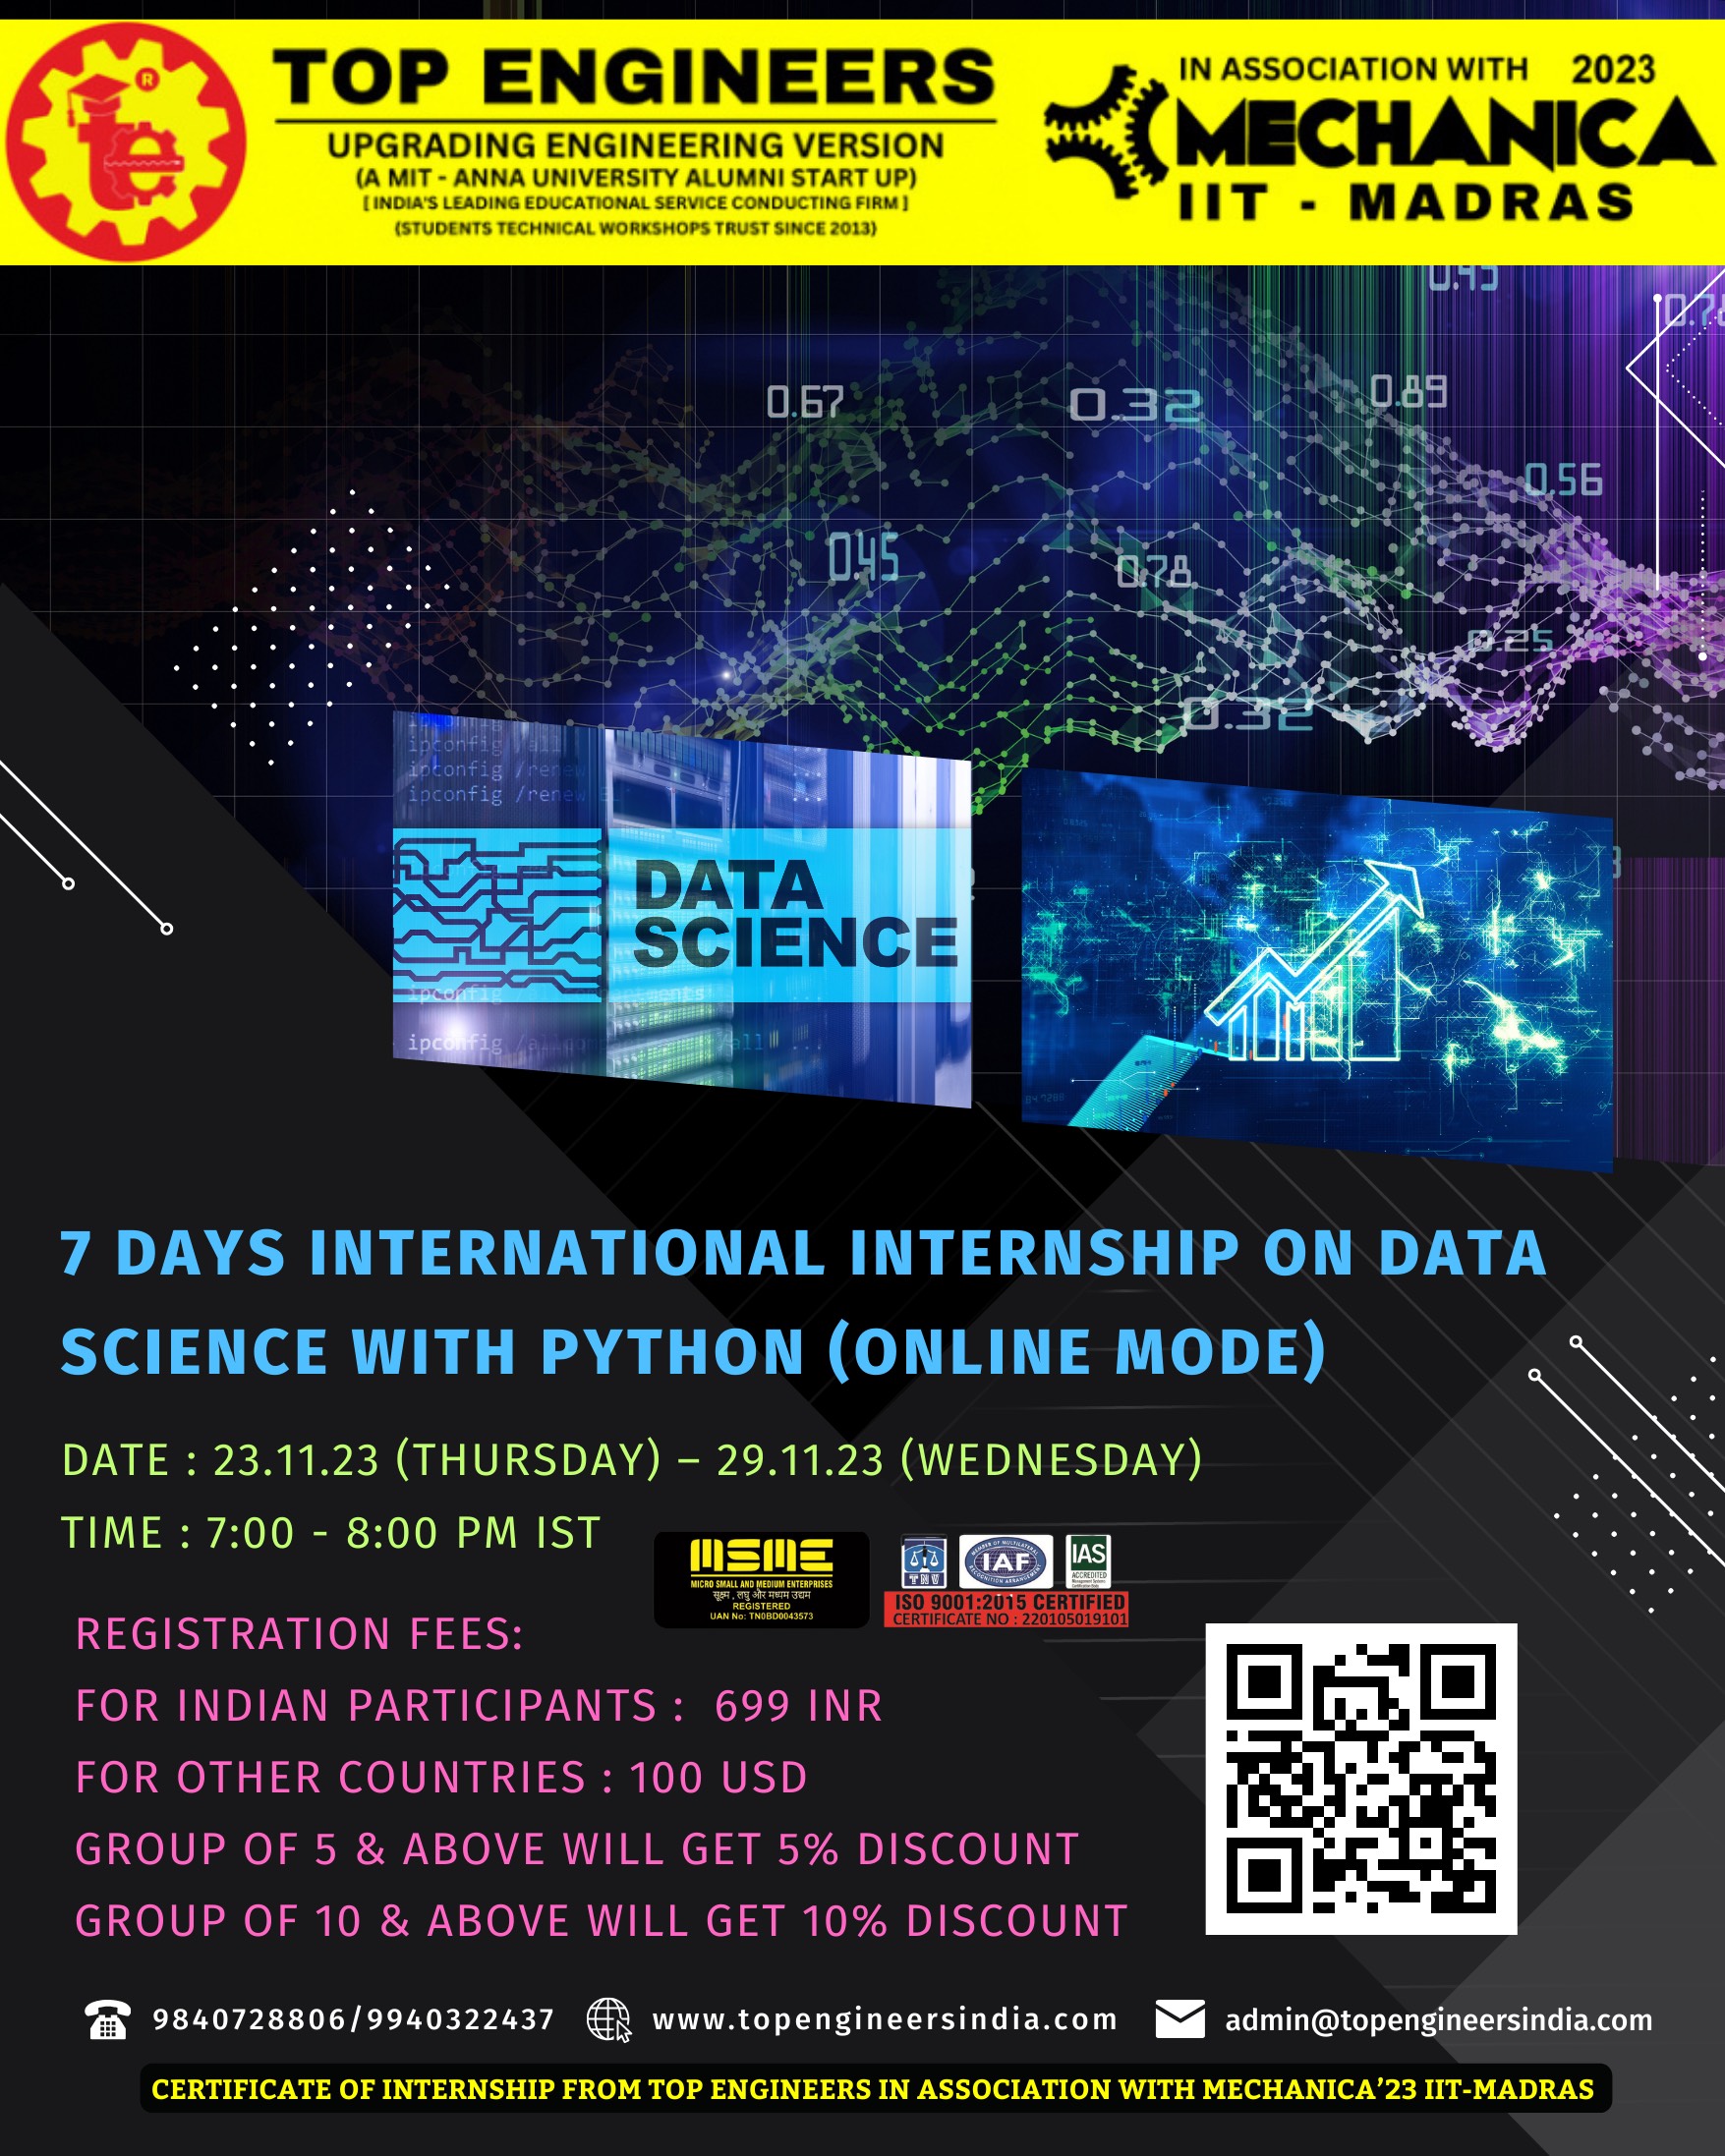 7 Days International Internship on Data Science with Python (Online Mode) 2023